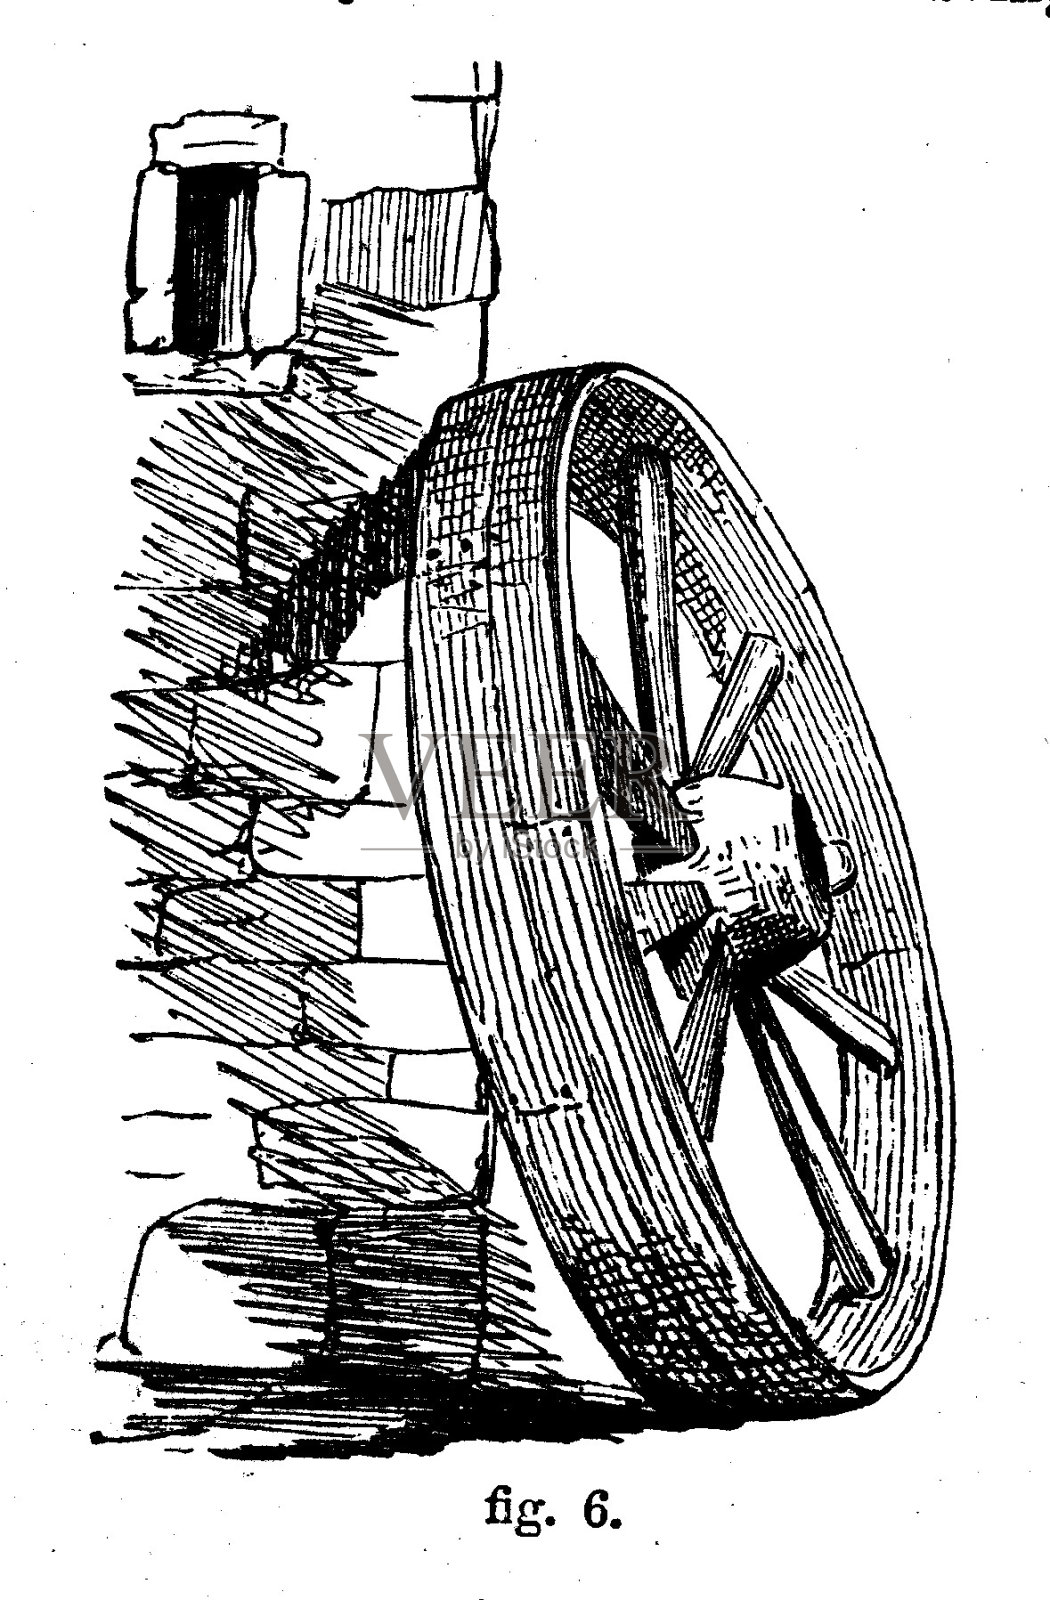 维多利亚时代的黑白简单线条画车轮靠在石墙上，展示如何遮阳;罗伯特·斯科特·伯恩1860年的《自助百科全书》中的绘图和遮阳技术。插画图片素材